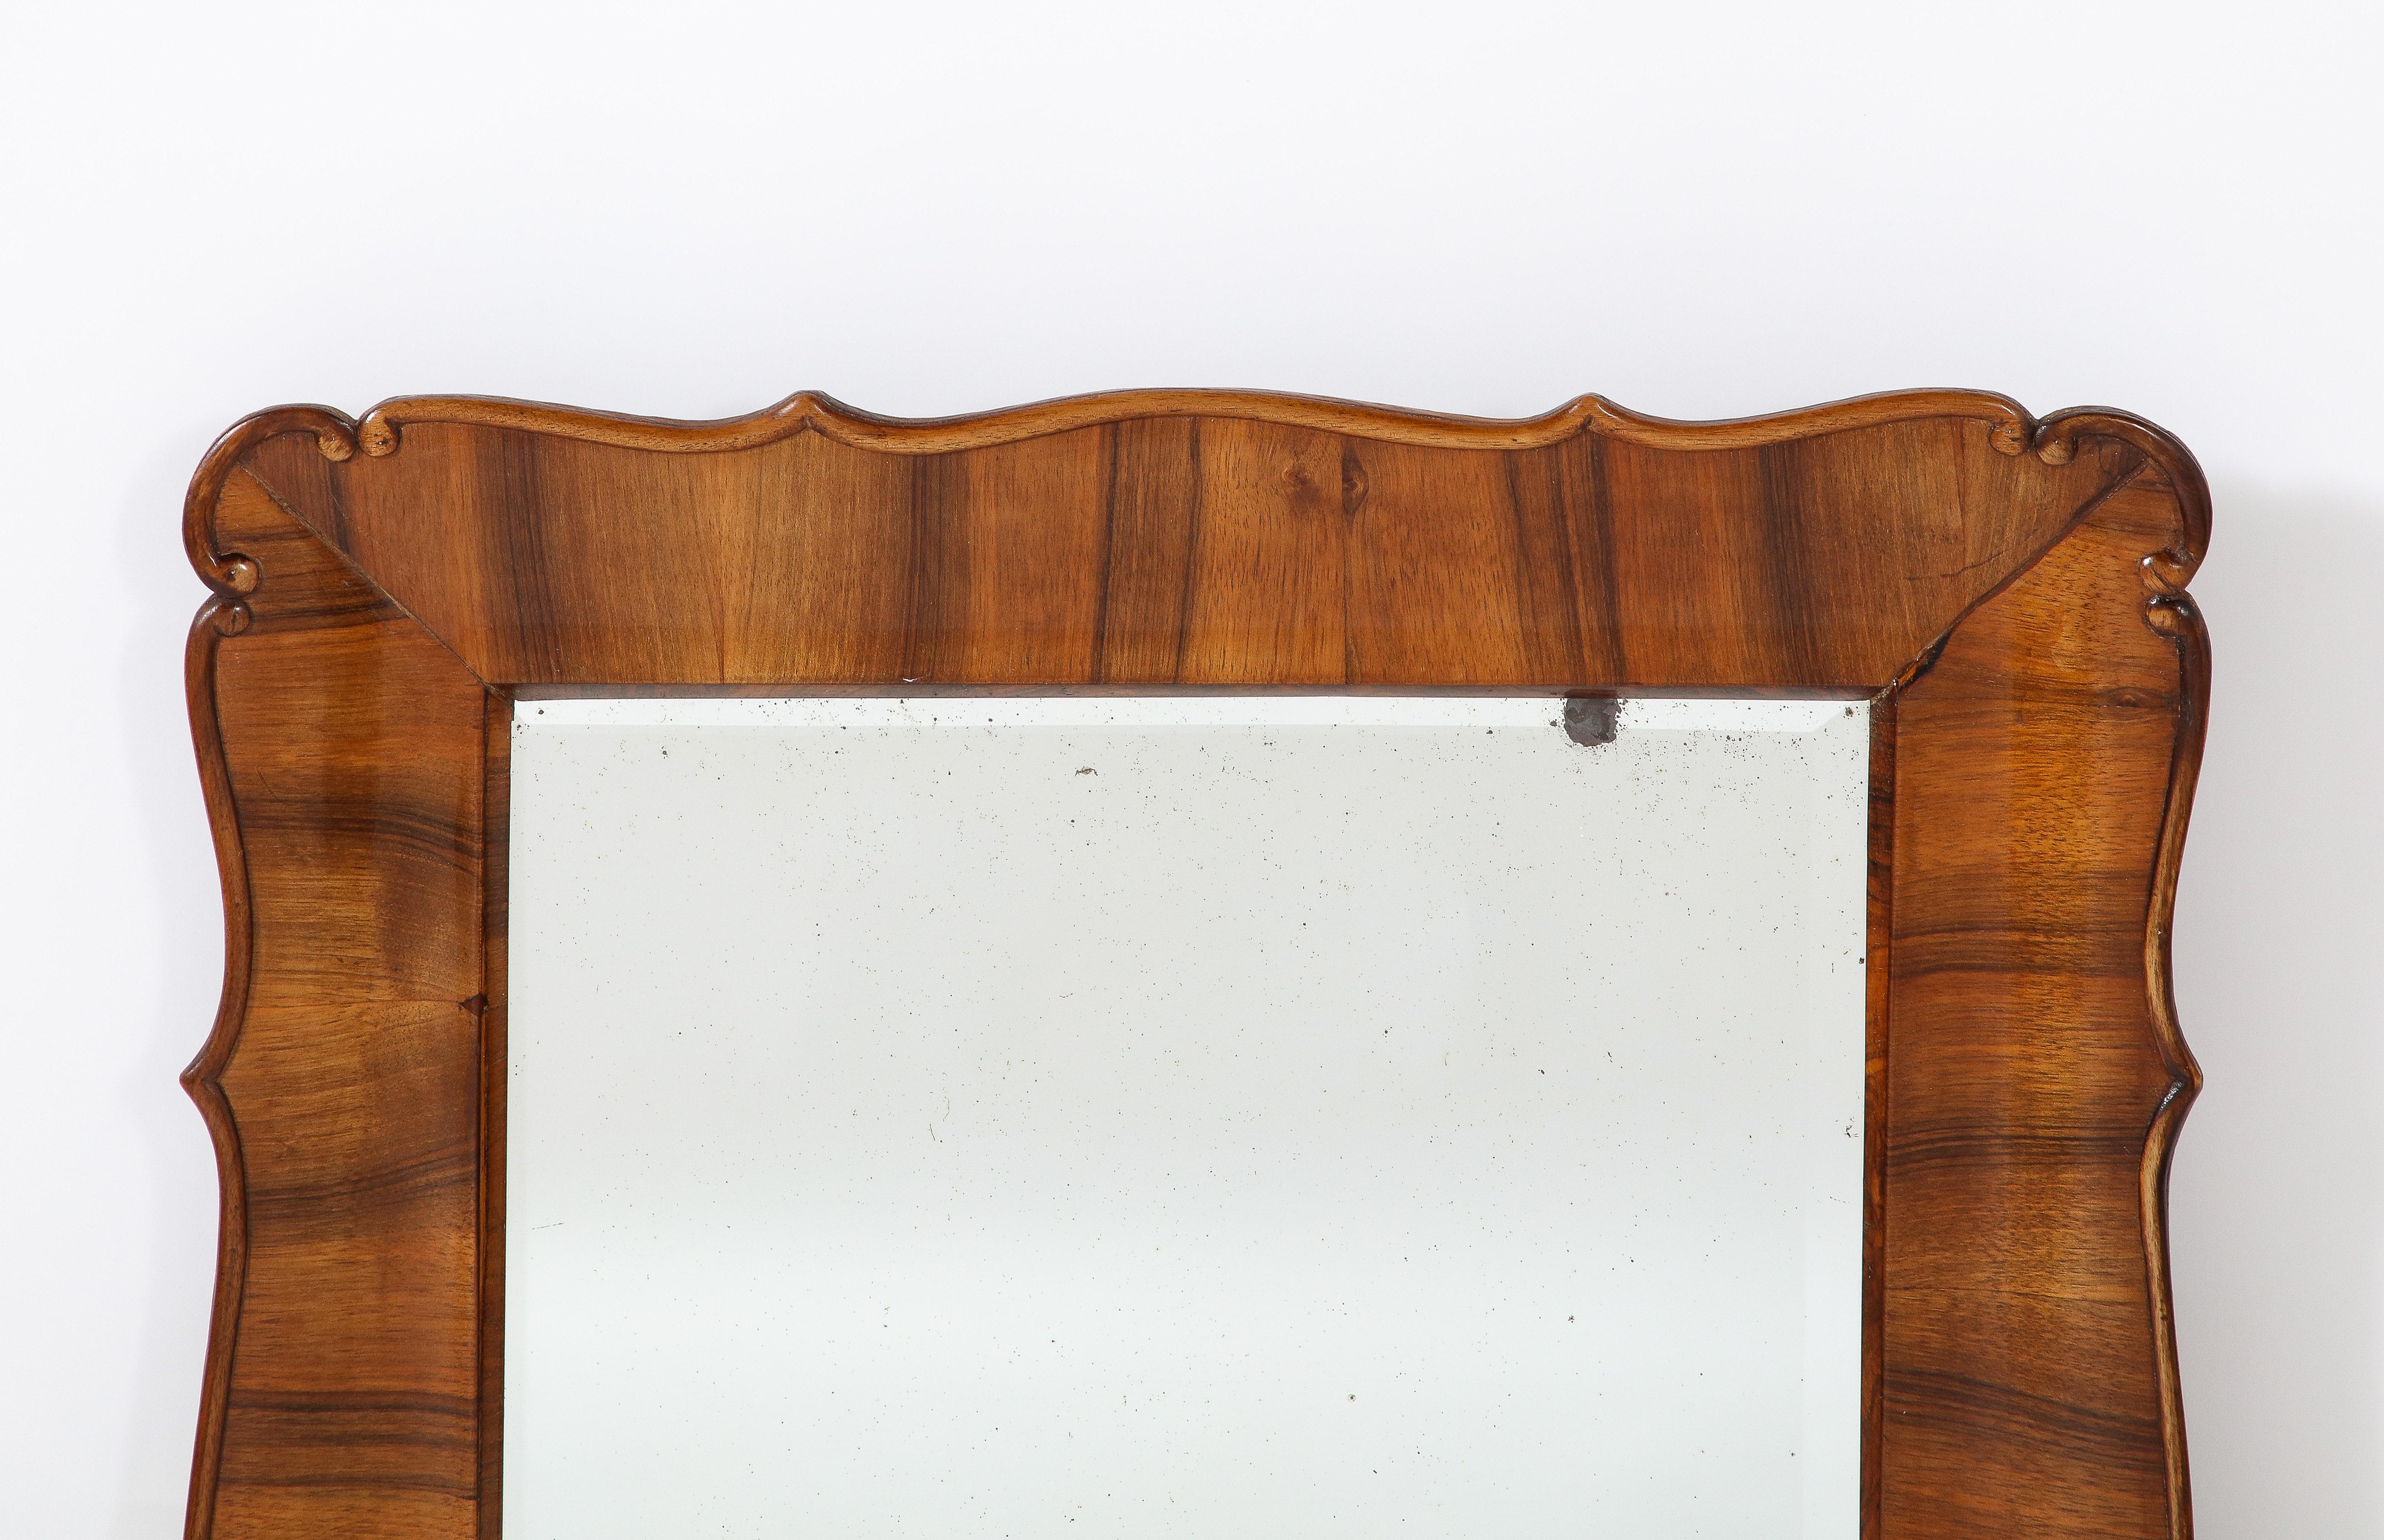 Ein seltener und einzigartiger österreichischer Biedermeier-Spiegel mit Nussbaum-Rahmen und handgeschnitztem Wellen- und Schnitzmotiv. Äußerst raffinierte Form und elegantes Design. Das reiche, gemaserte Walnussholz kontrastiert wunderschön mit dem